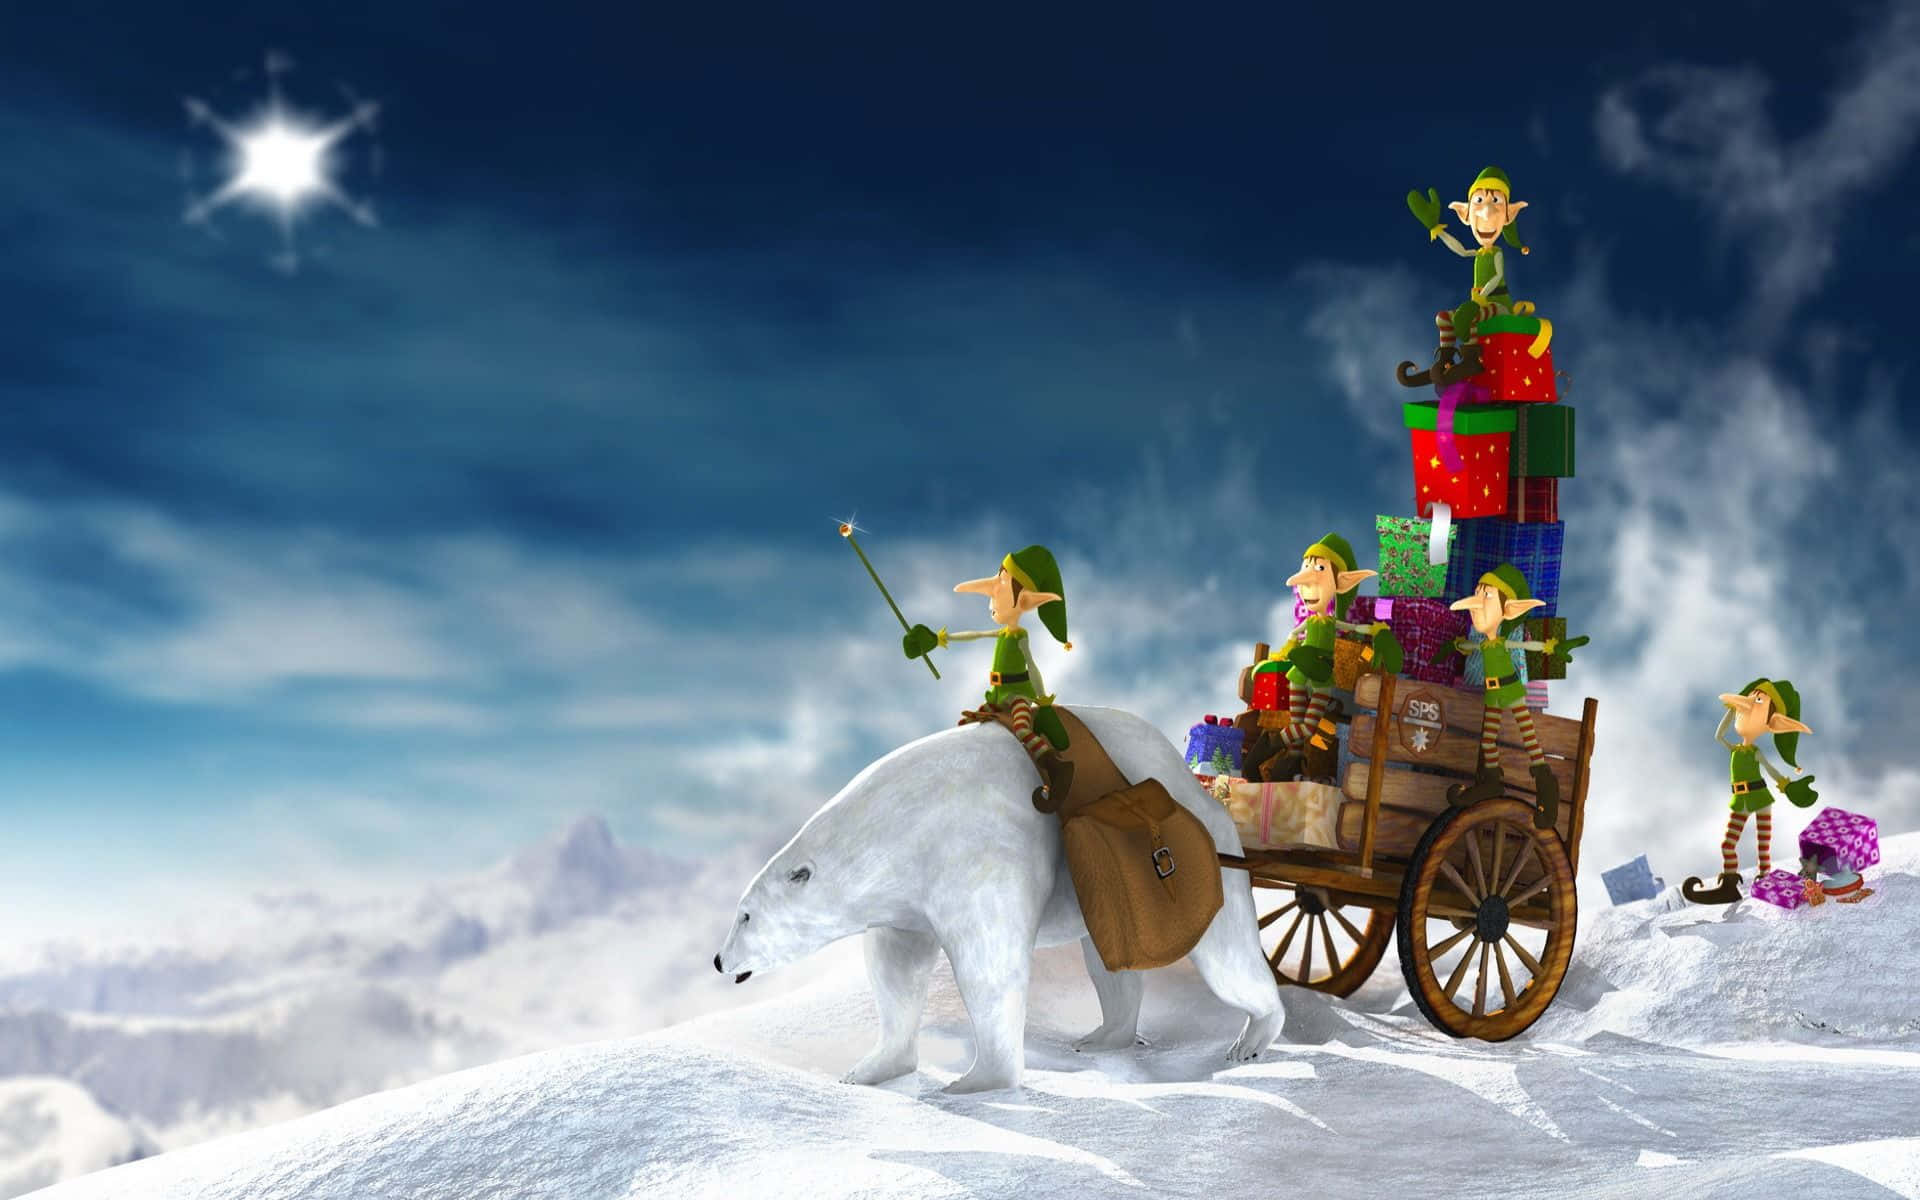 Witzigerweihnachts-zoom-hintergrund: Elf Auf Einem Eisbären